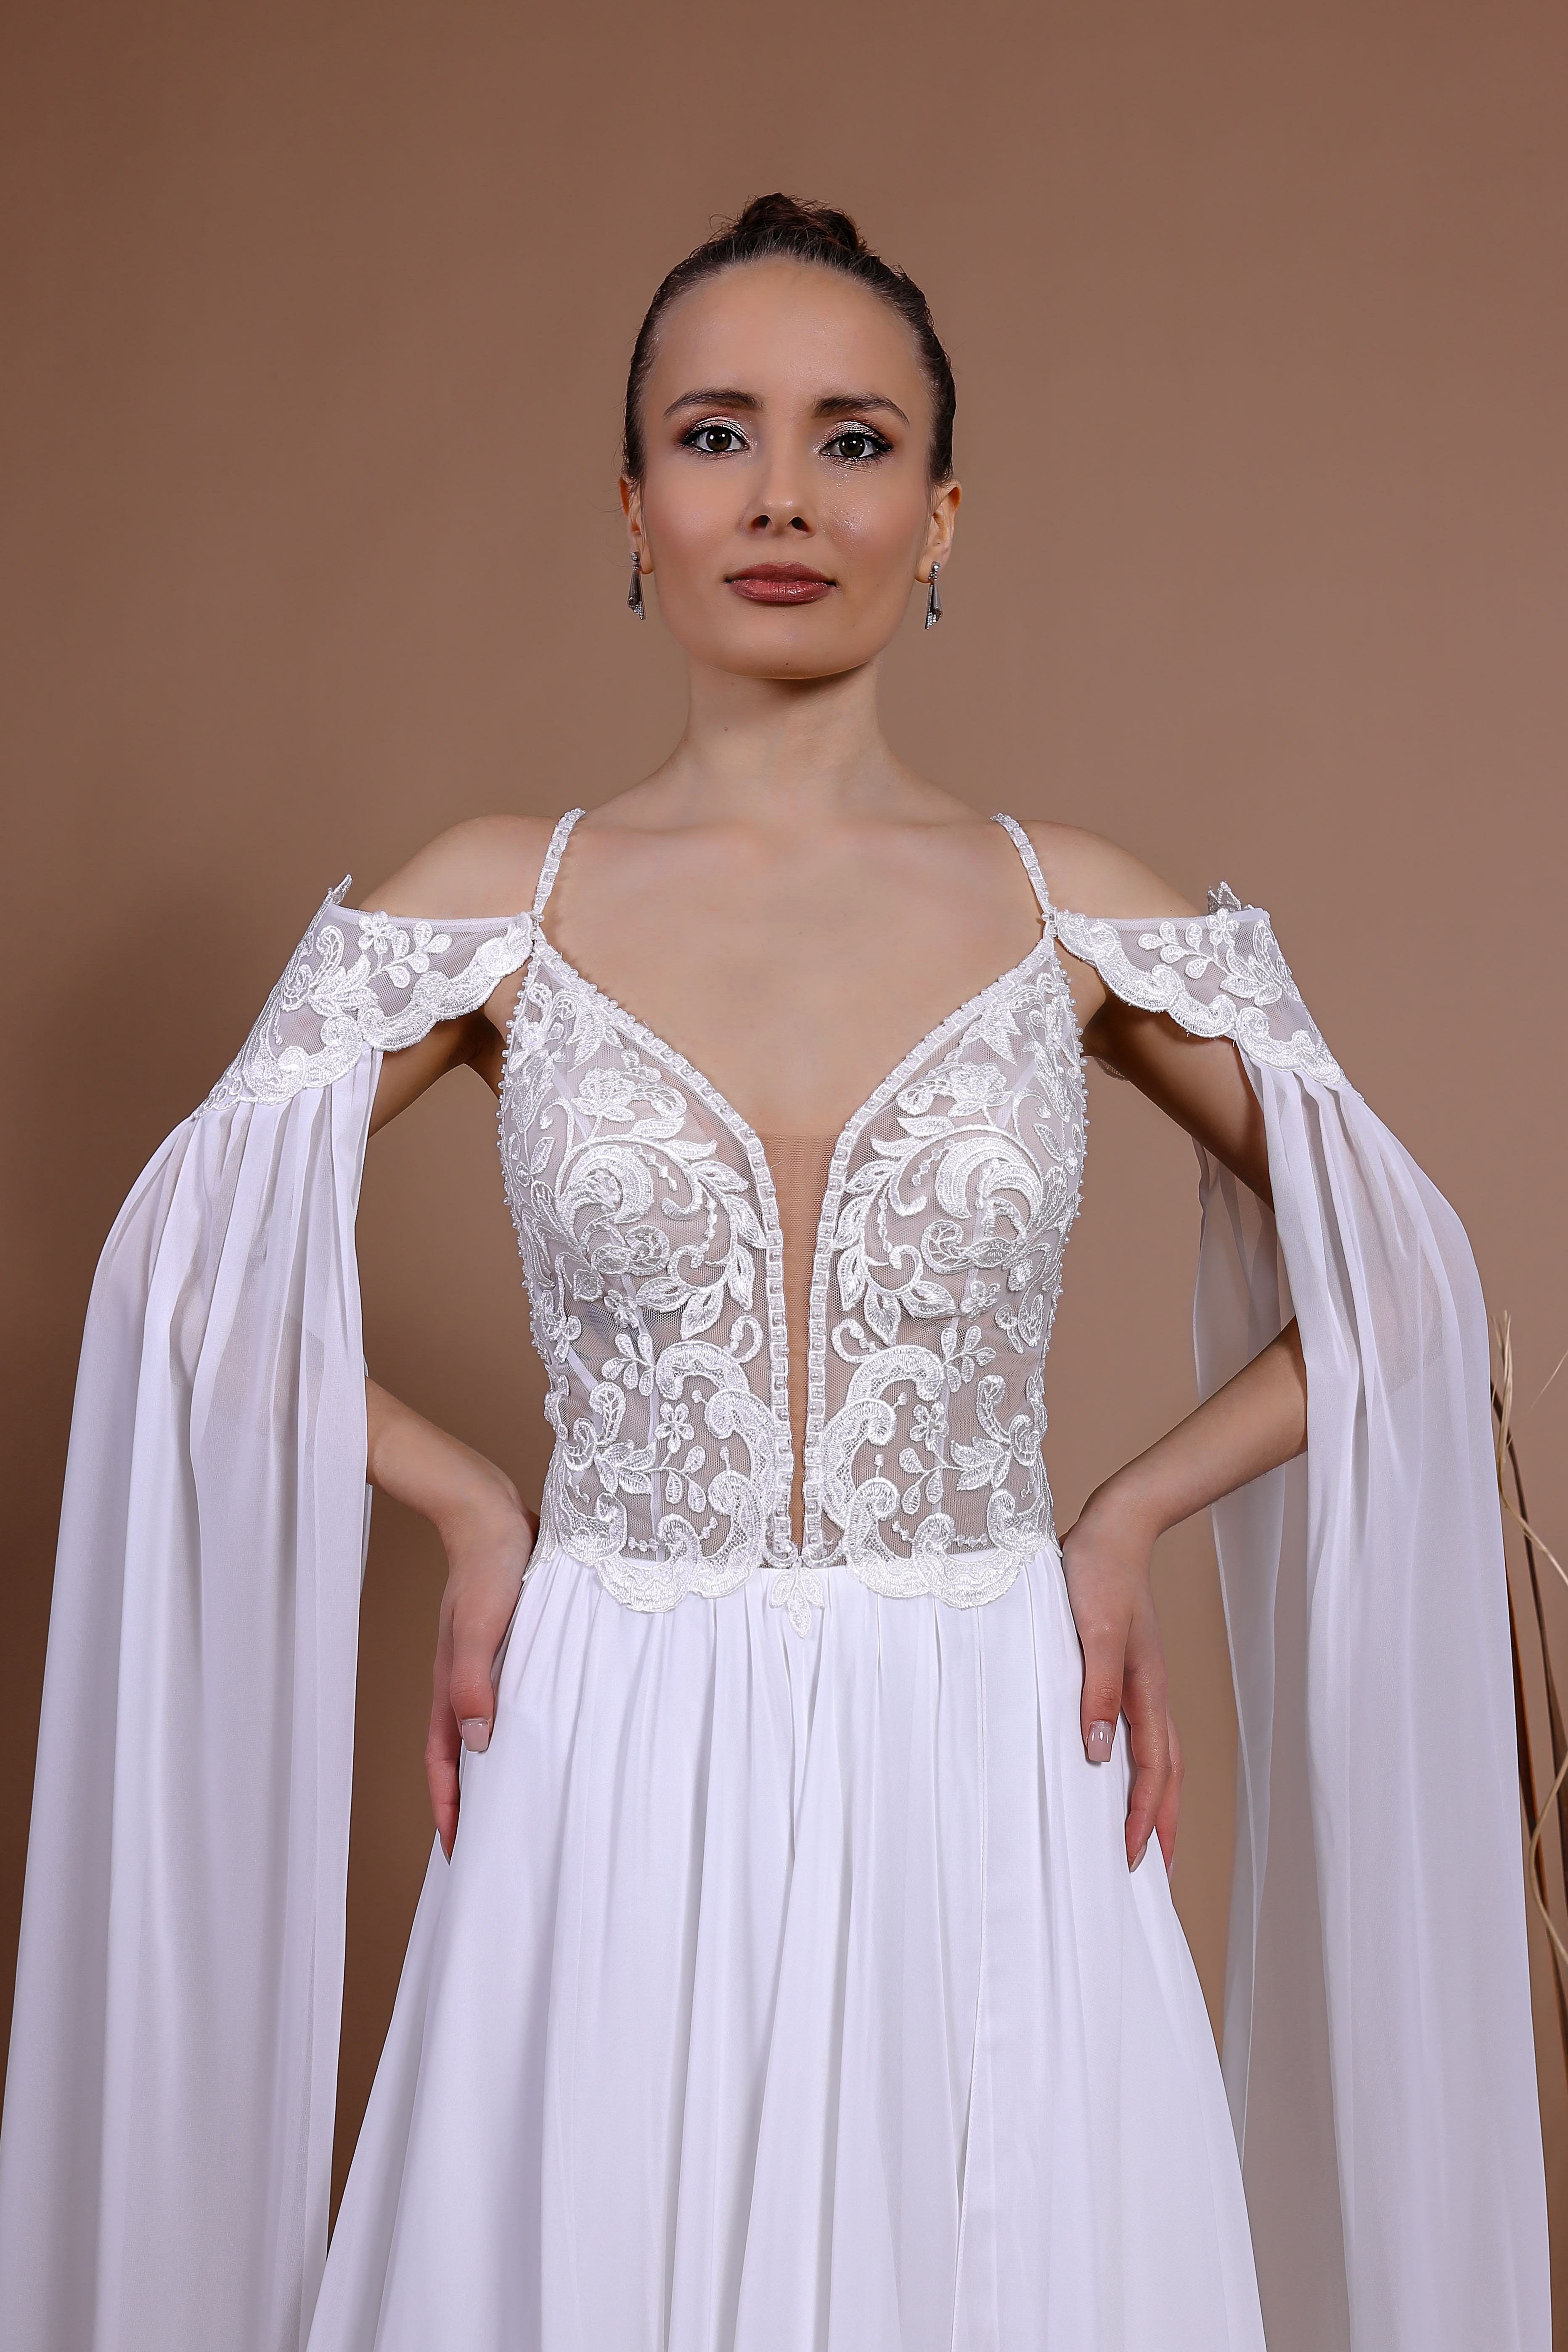 Schantal Brautkleid aus der Kollektion „Traum“, Modell 14140. Foto 5